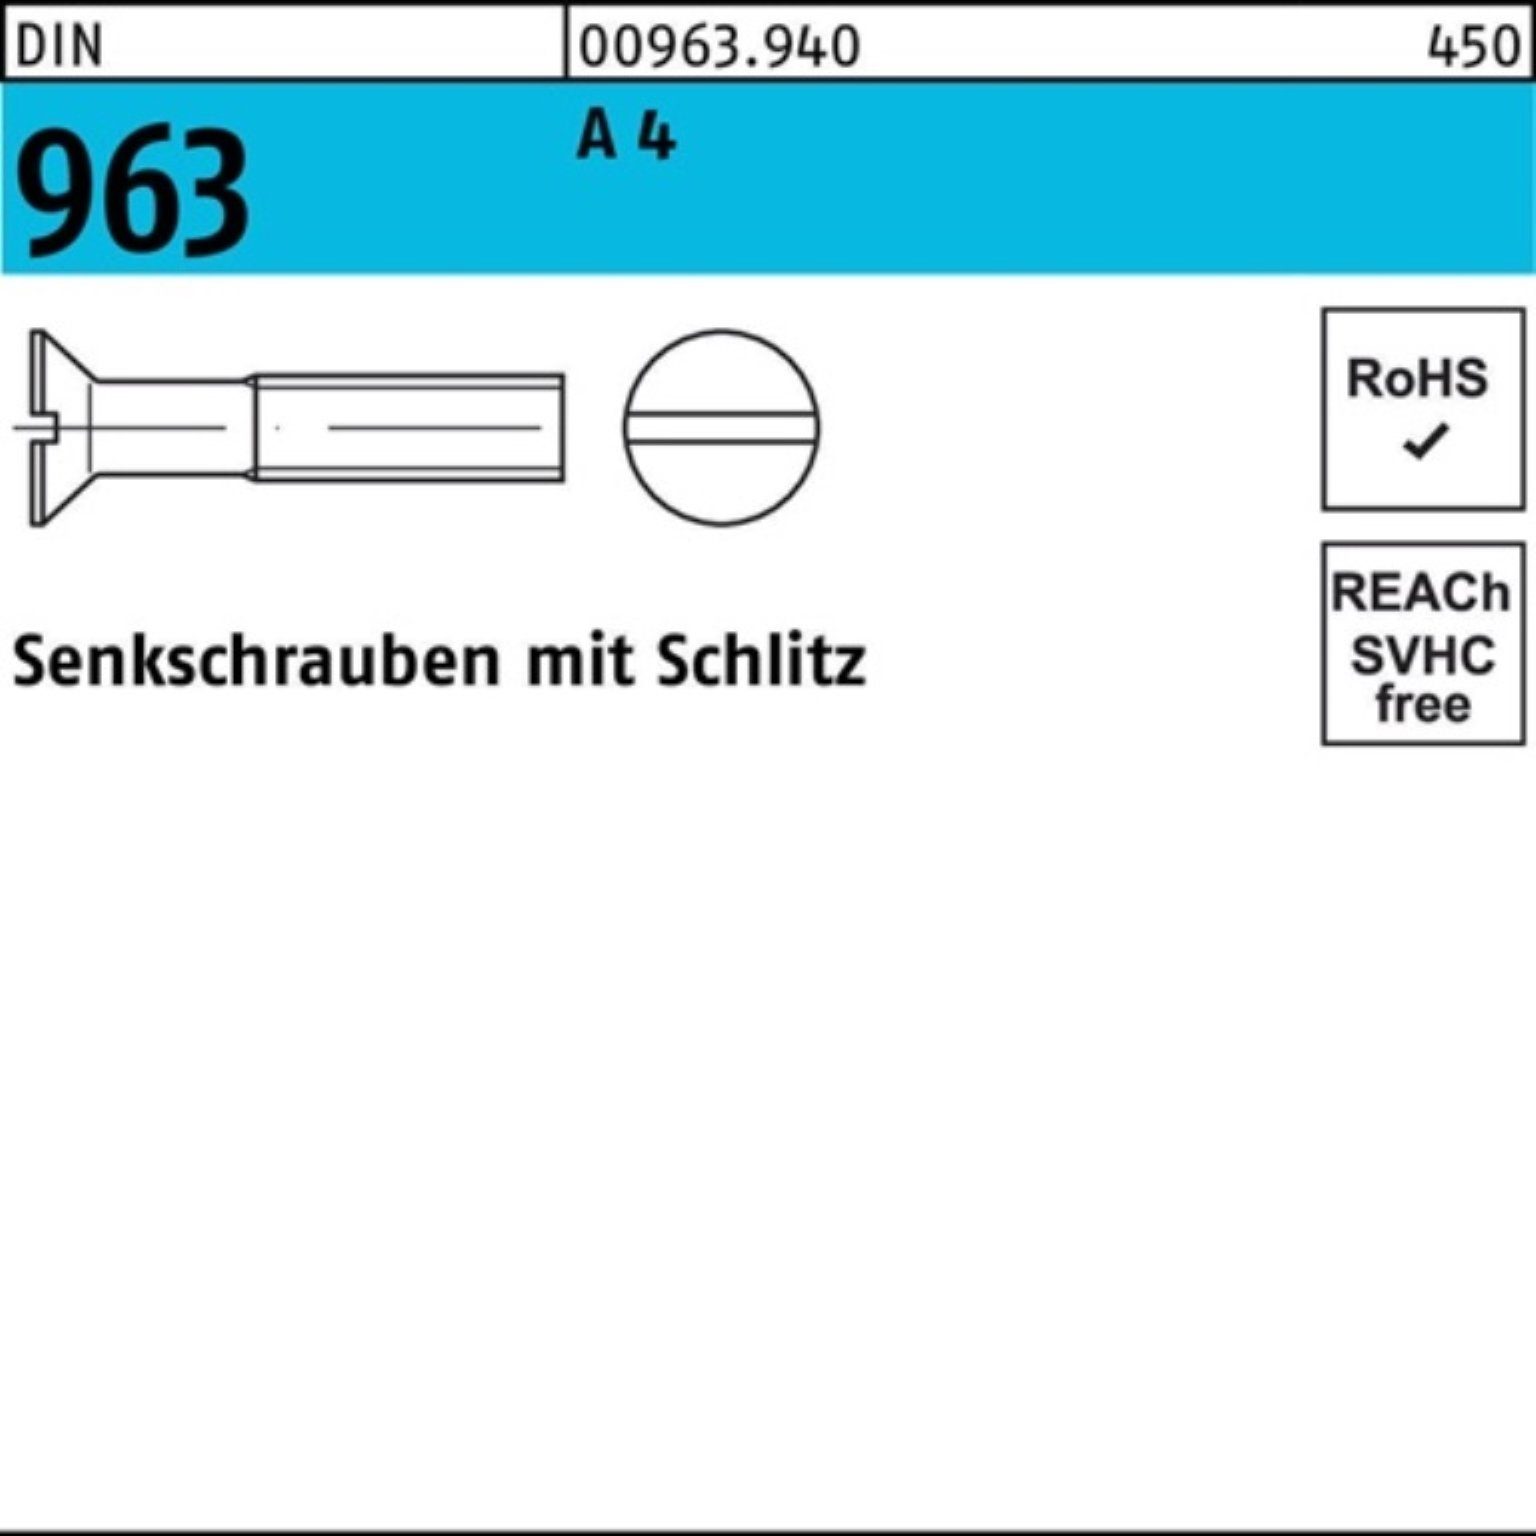 A 100er 1 Schlitz Stück 60 Senkschraube 963 Reyher Pack DIN 4 A 963 Senkschraube DIN M16x